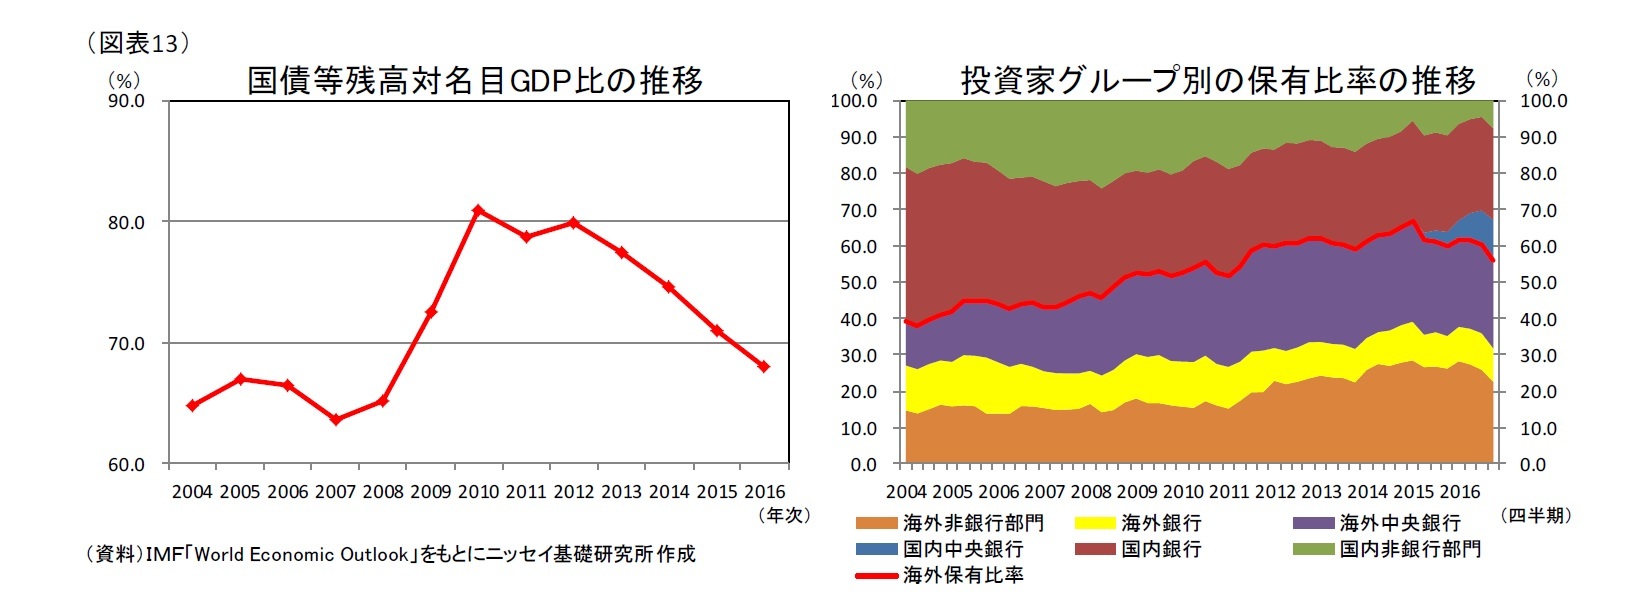 (図表13)国債等残高対名目GDP比の推移/投資家グループ別の保有比率の推移